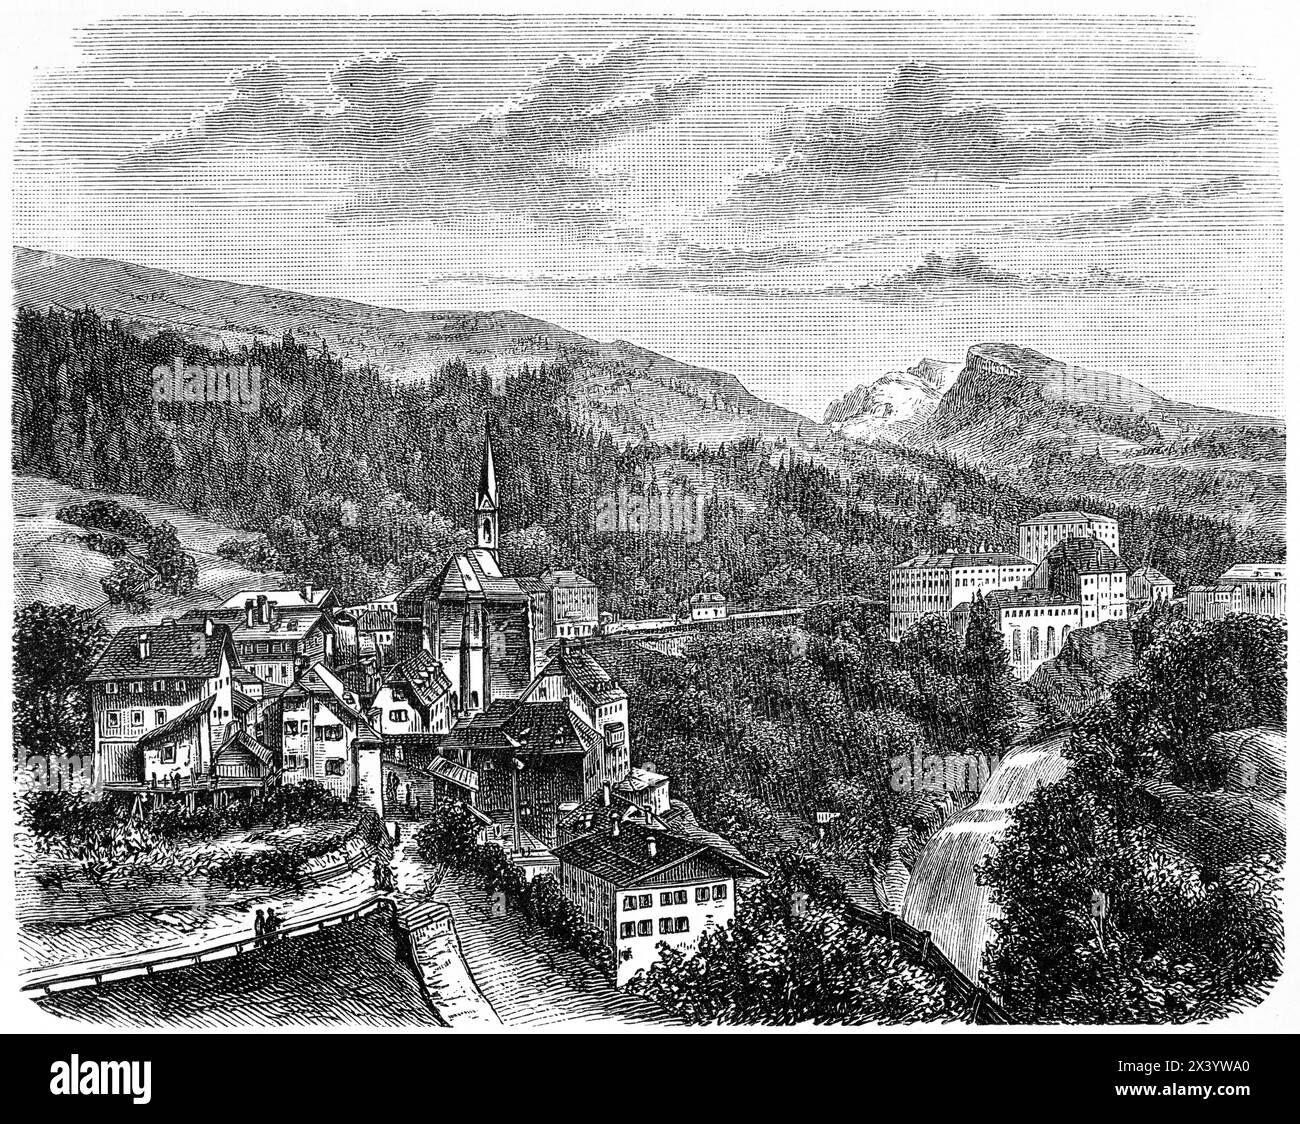 Wildbad Gastein, heute Spa Bad Gastein, in einer Berglandschaft gelegen, Land Salzburg, Österreich, Mitteleuropa, historische Illustration 1880 Stockfoto